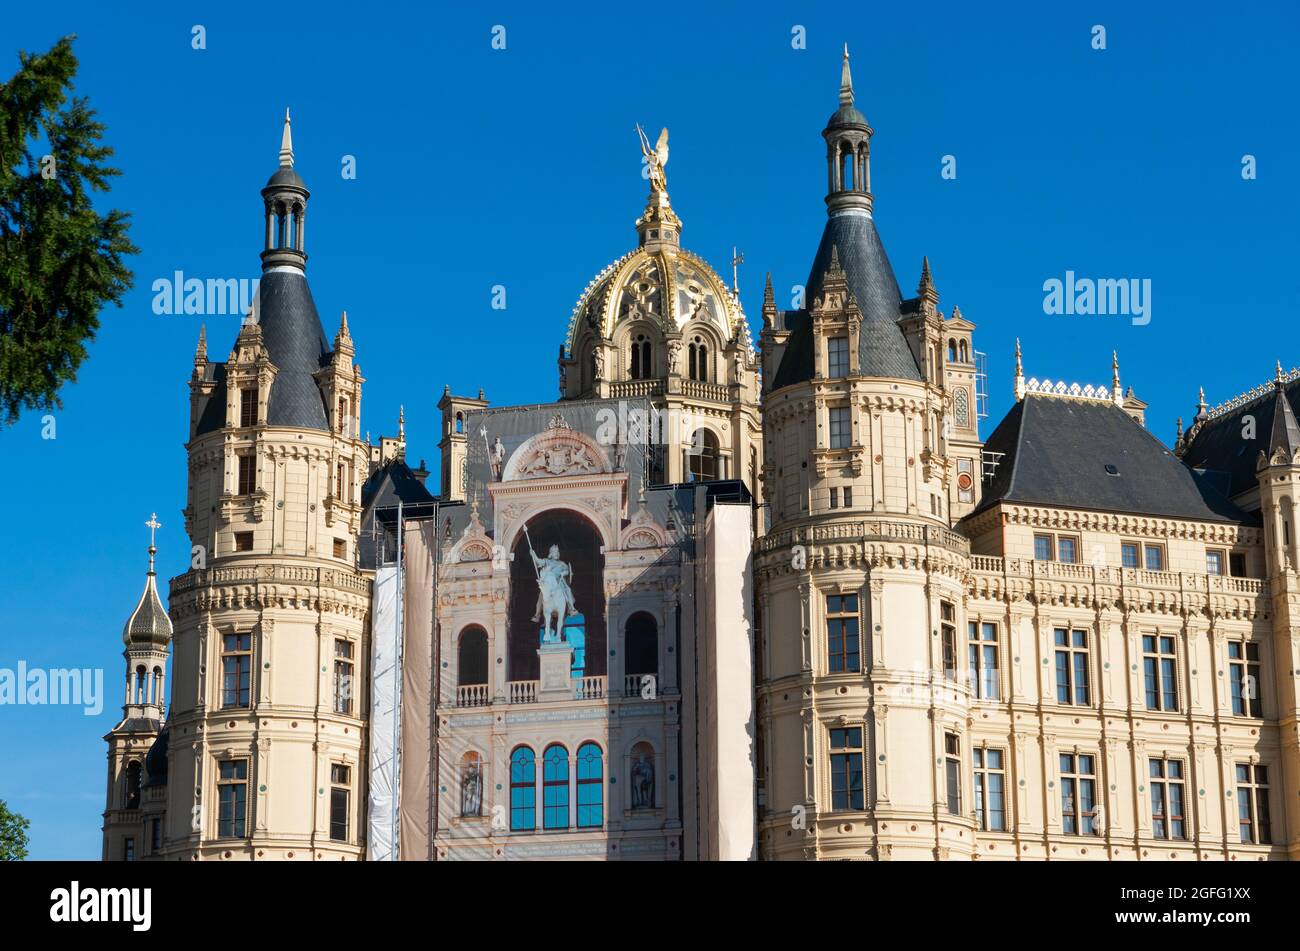 Die wunderschöne historische Stadt Schwerin in Deutschland ist bekannt für ihr altes und beeindruckendes Gebäude und ein Weltkulturerbe. Stockfoto